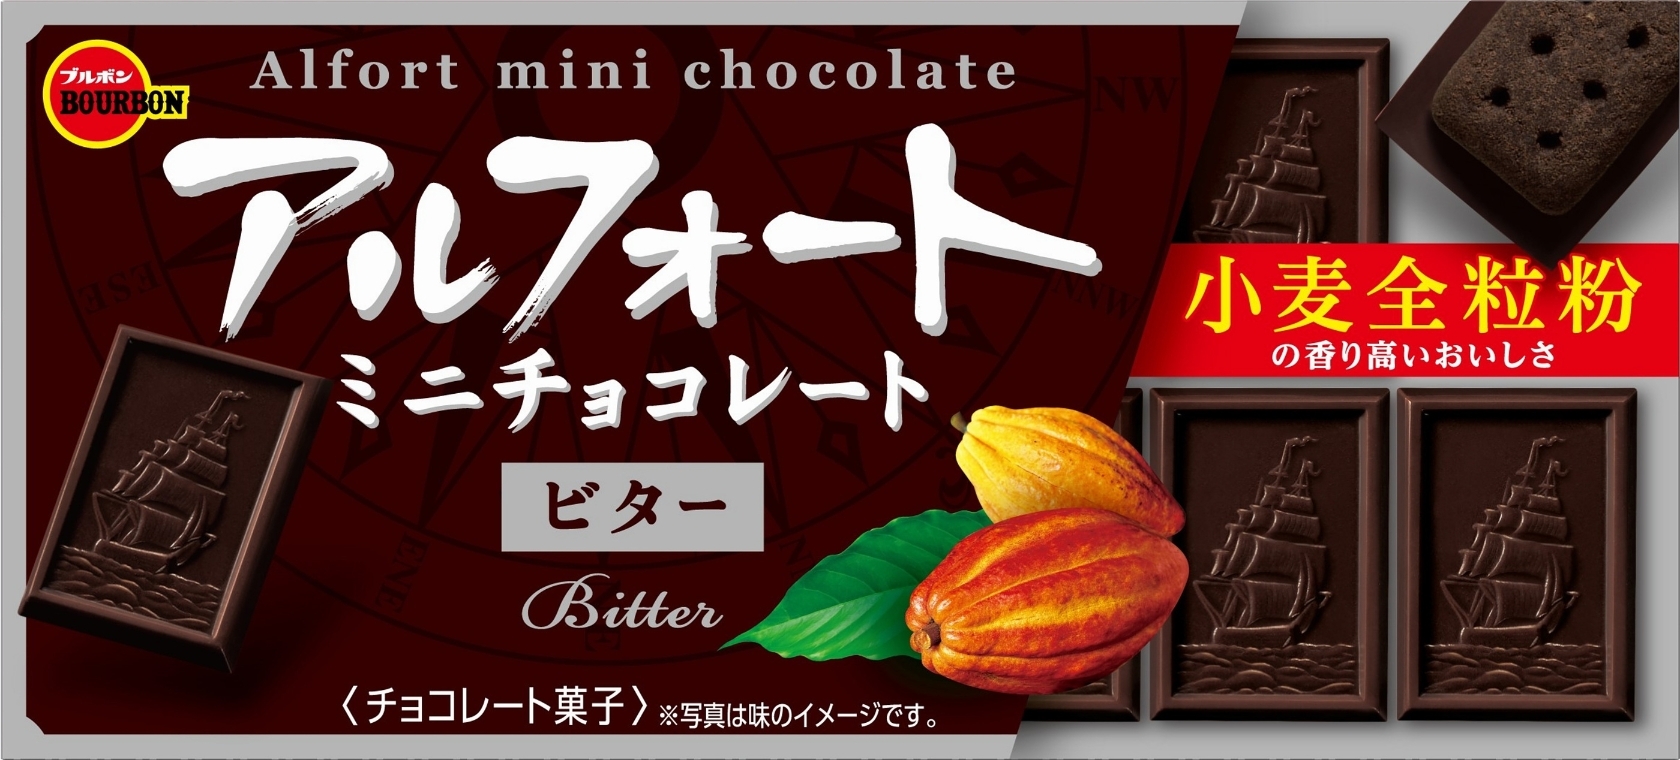 アルフォートミニチョコレートビター12個 10箱 ブルボン チョコレート